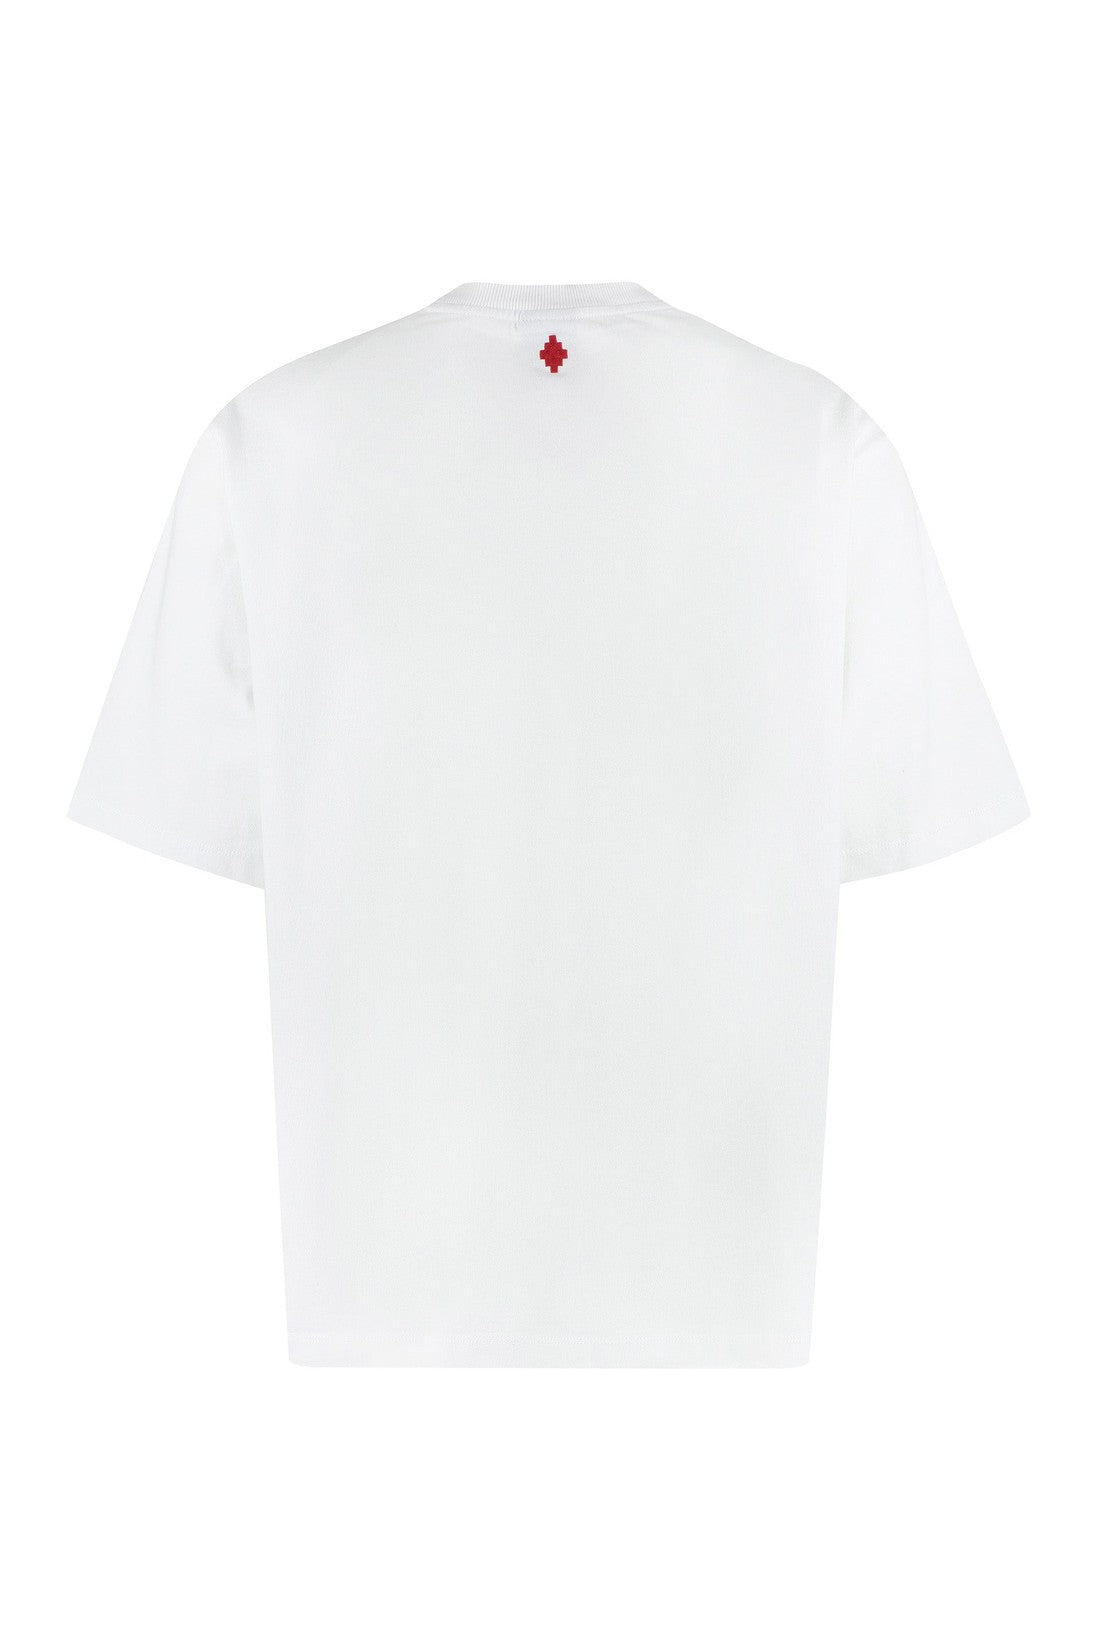 Marcelo Burlon County of Milan-OUTLET-SALE-Cotton crew-neck T-shirt-ARCHIVIST